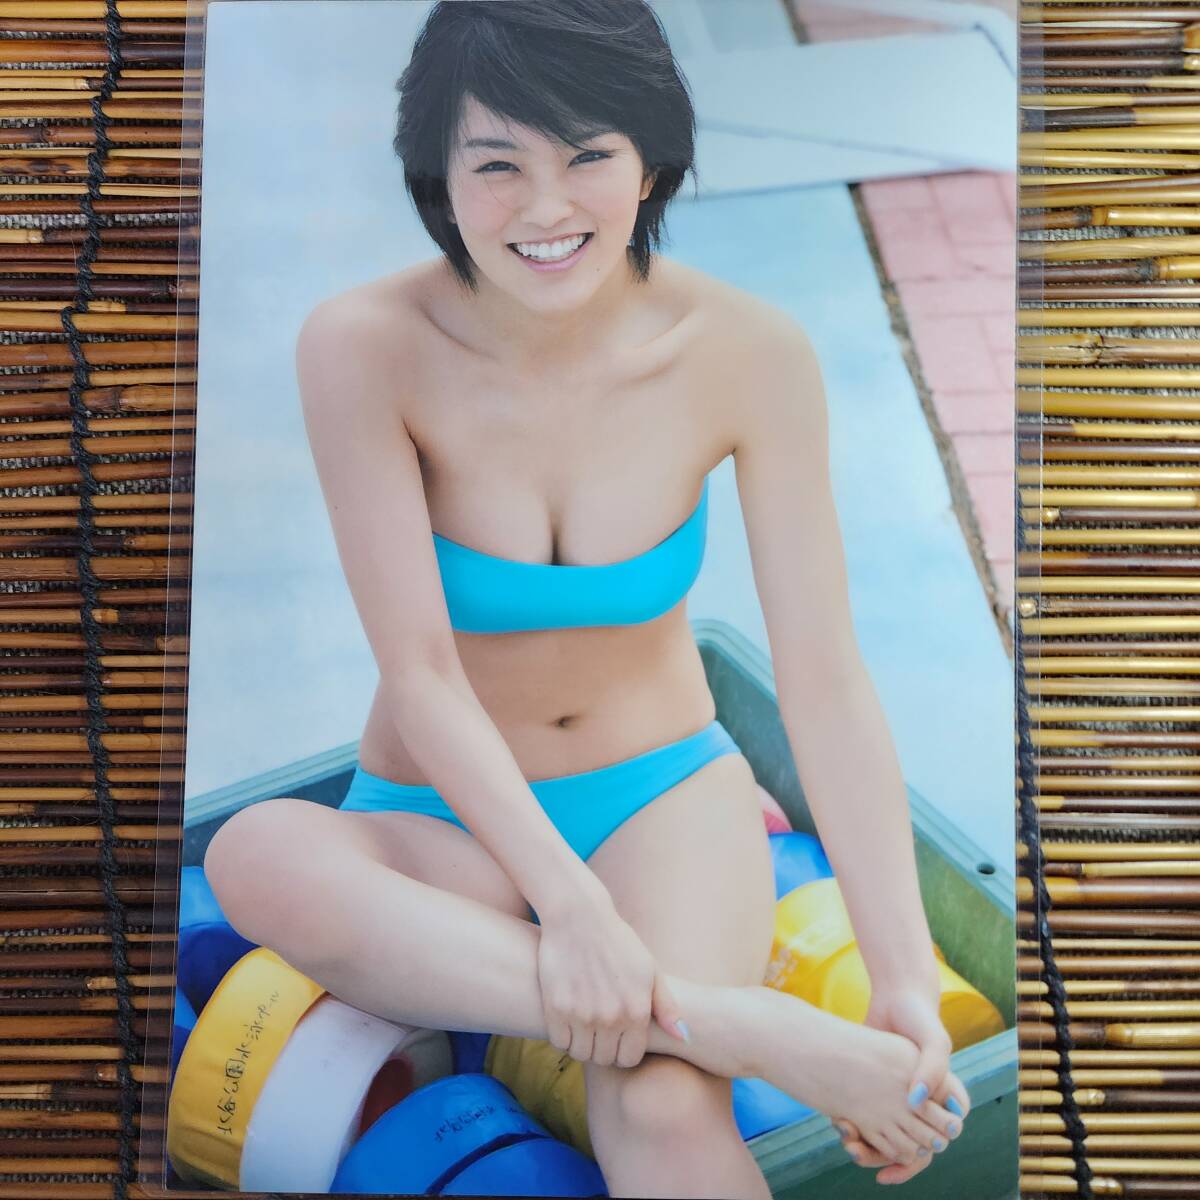 [ высокое качество толстый 150μ ламинирование обработка ] Yamamoto Sayaka купальный костюм B5 журнал вырезки 6 страница [ bikini model ]l6